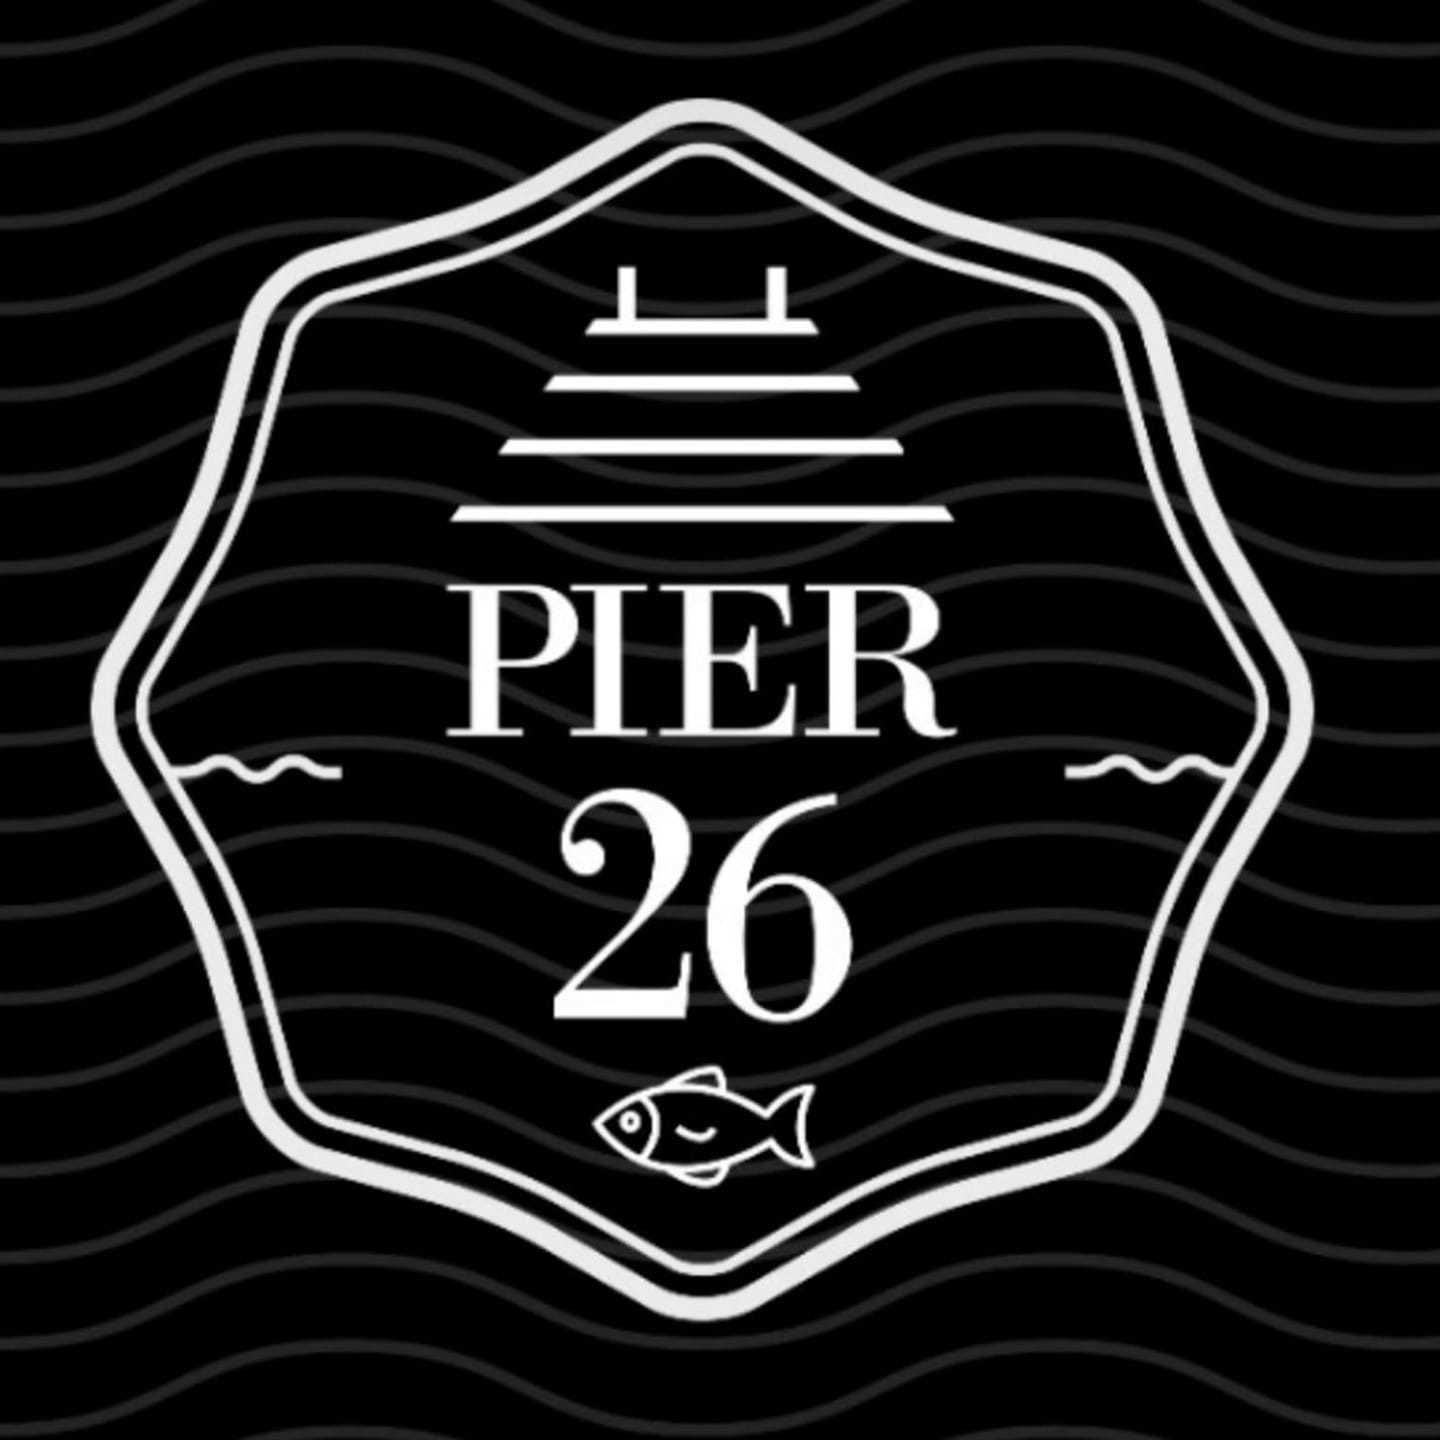 Pier 26 Opens In Queens